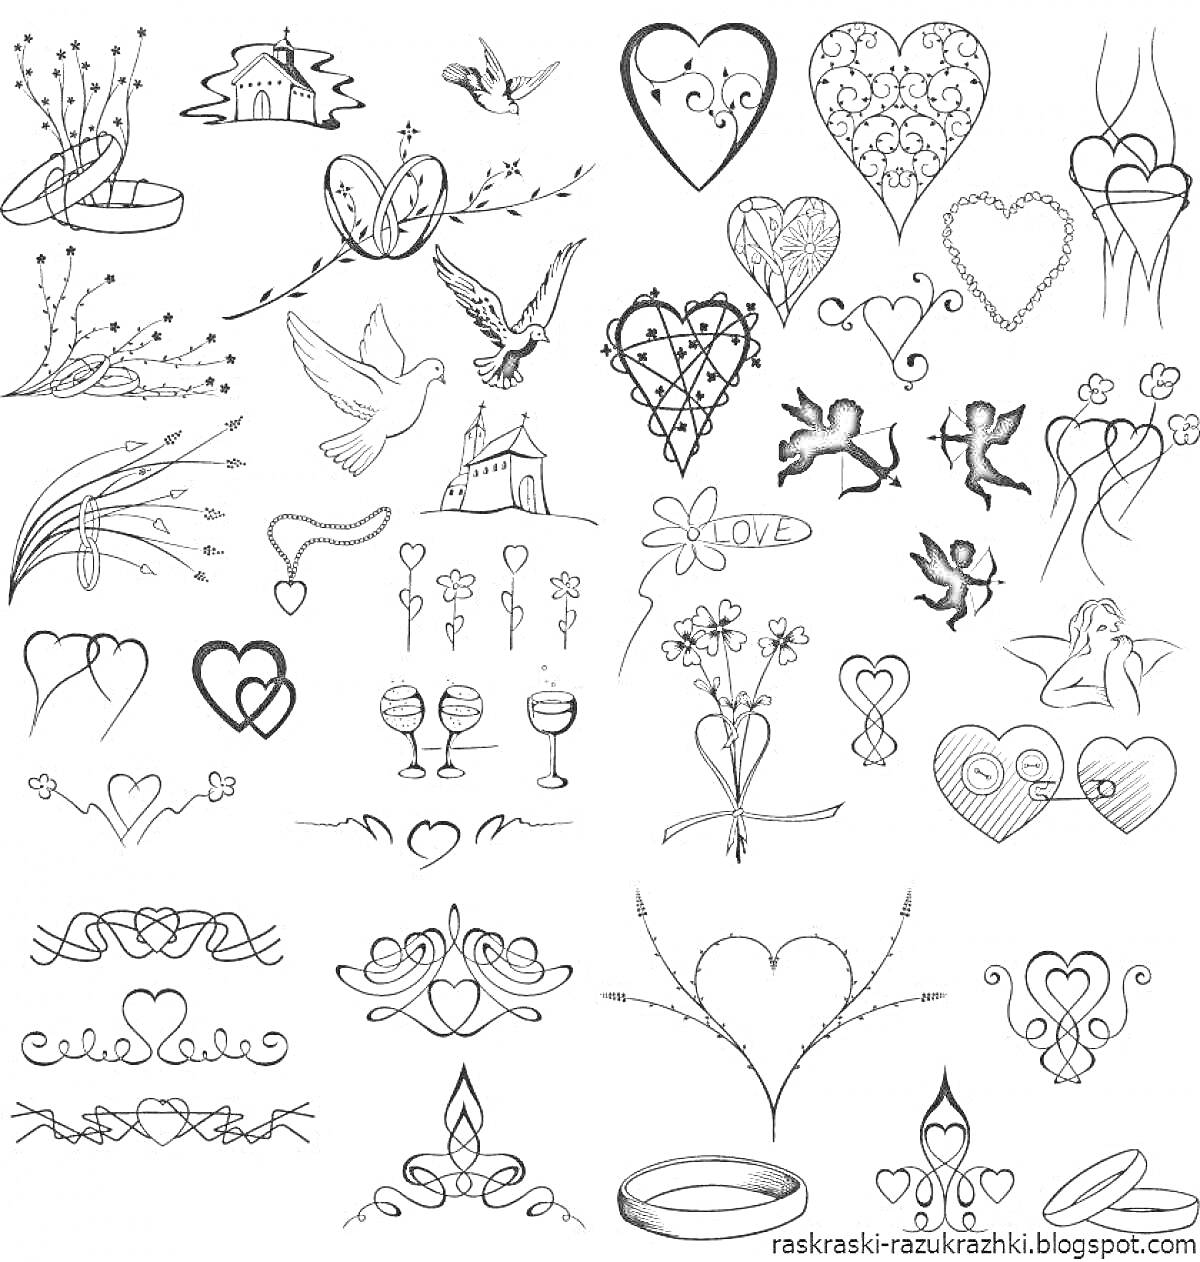 На раскраске изображено: Татуировки, Сердца, Голуби, Цветы, Крылья, Перья, Листья, Лента, Ангел, Кольцо, Корона, Бабочка, Бокал